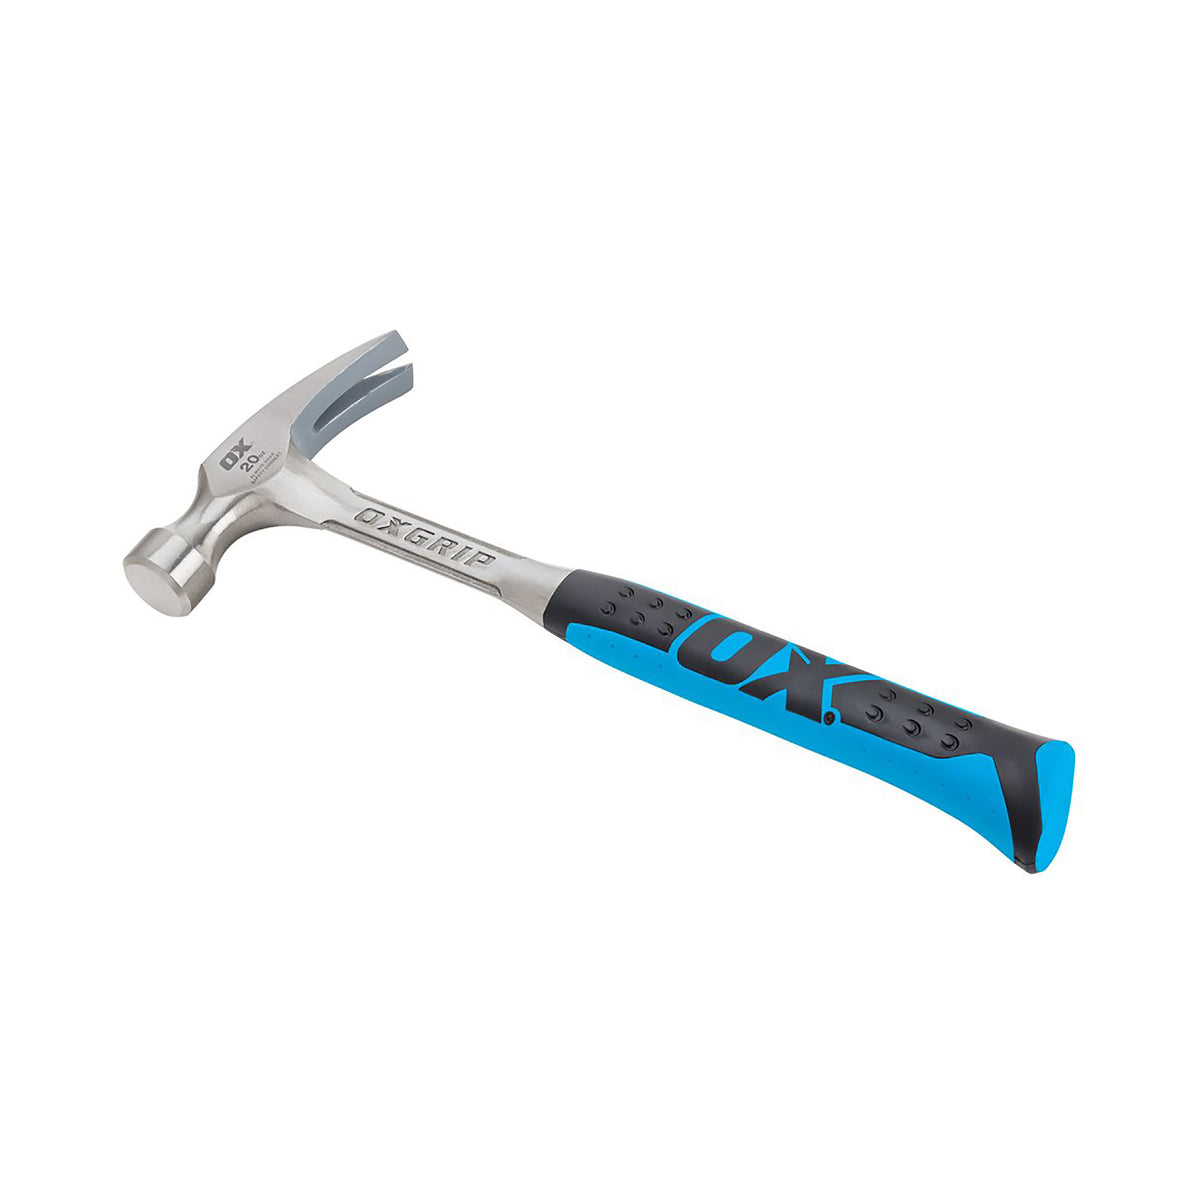 Ox Claw Hammer - 0.5kg/20oz